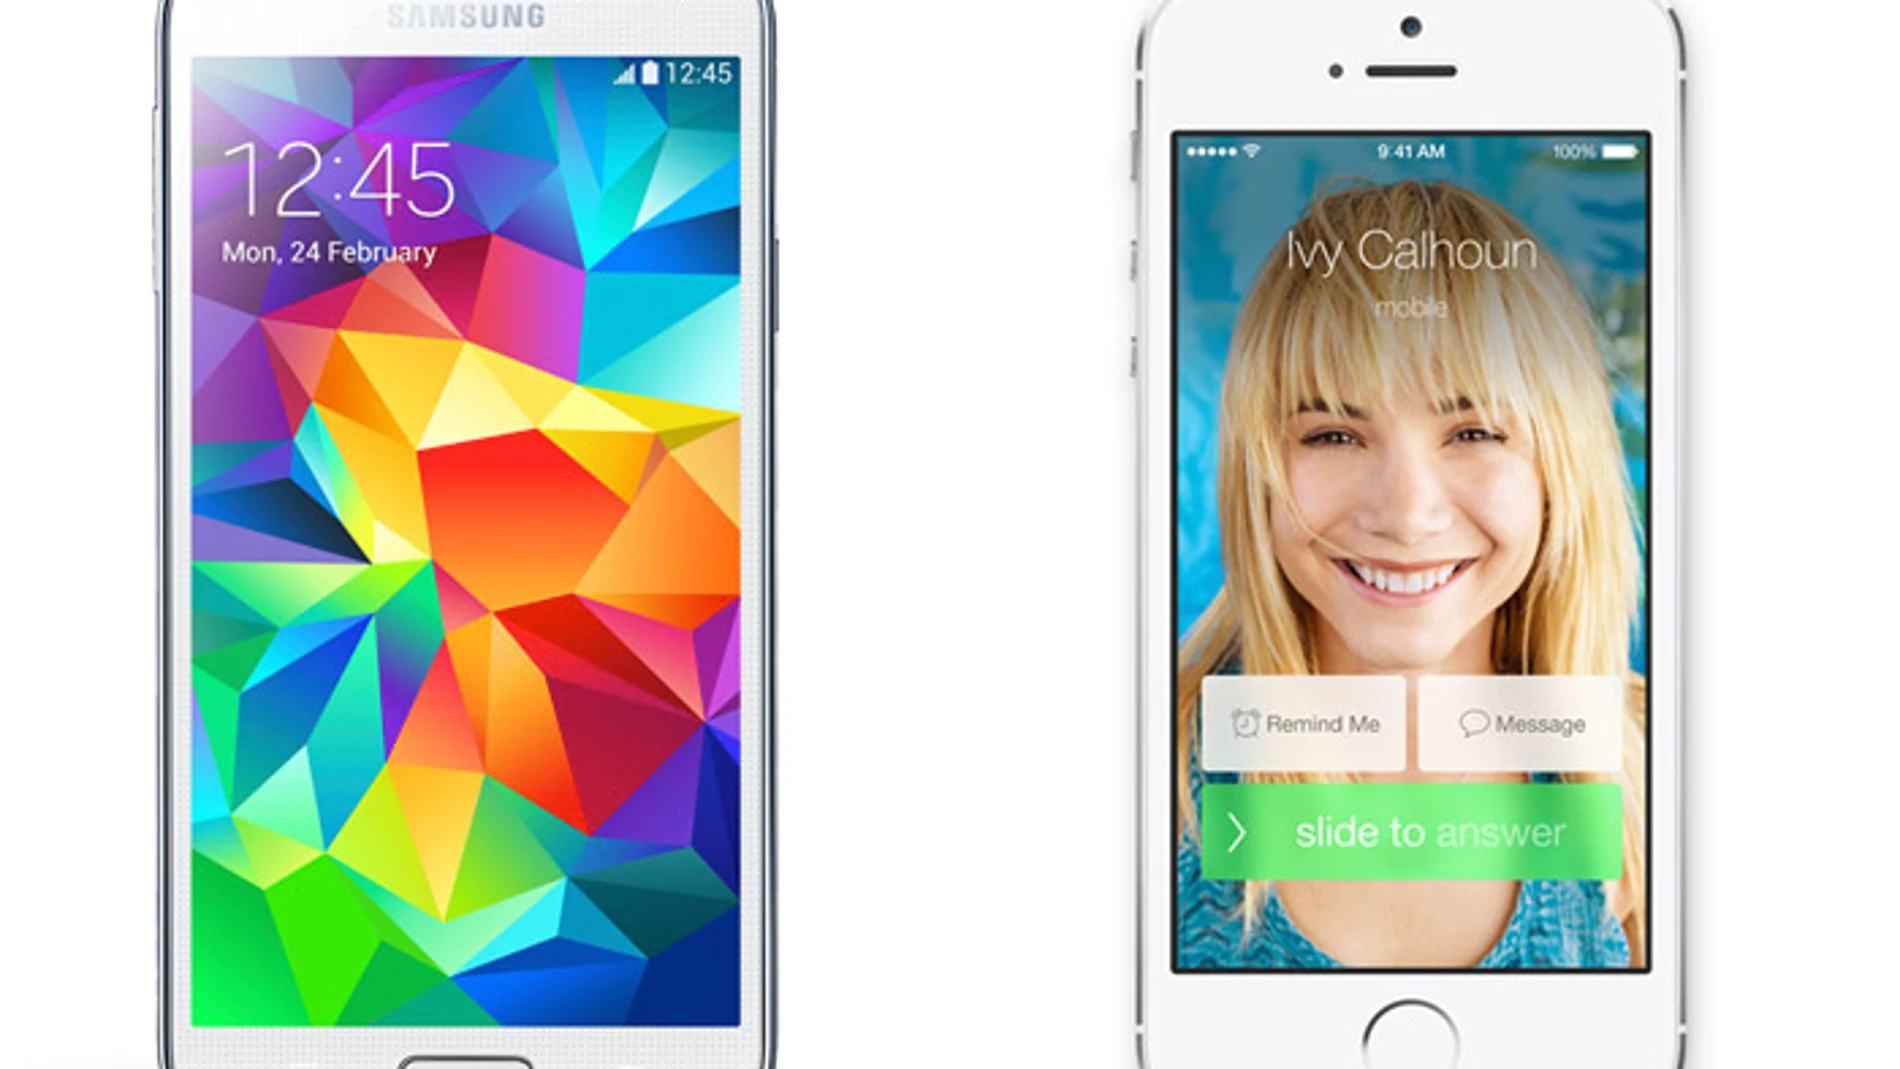 Comparamos los dos teléfonos superventas de Apple y Samsung